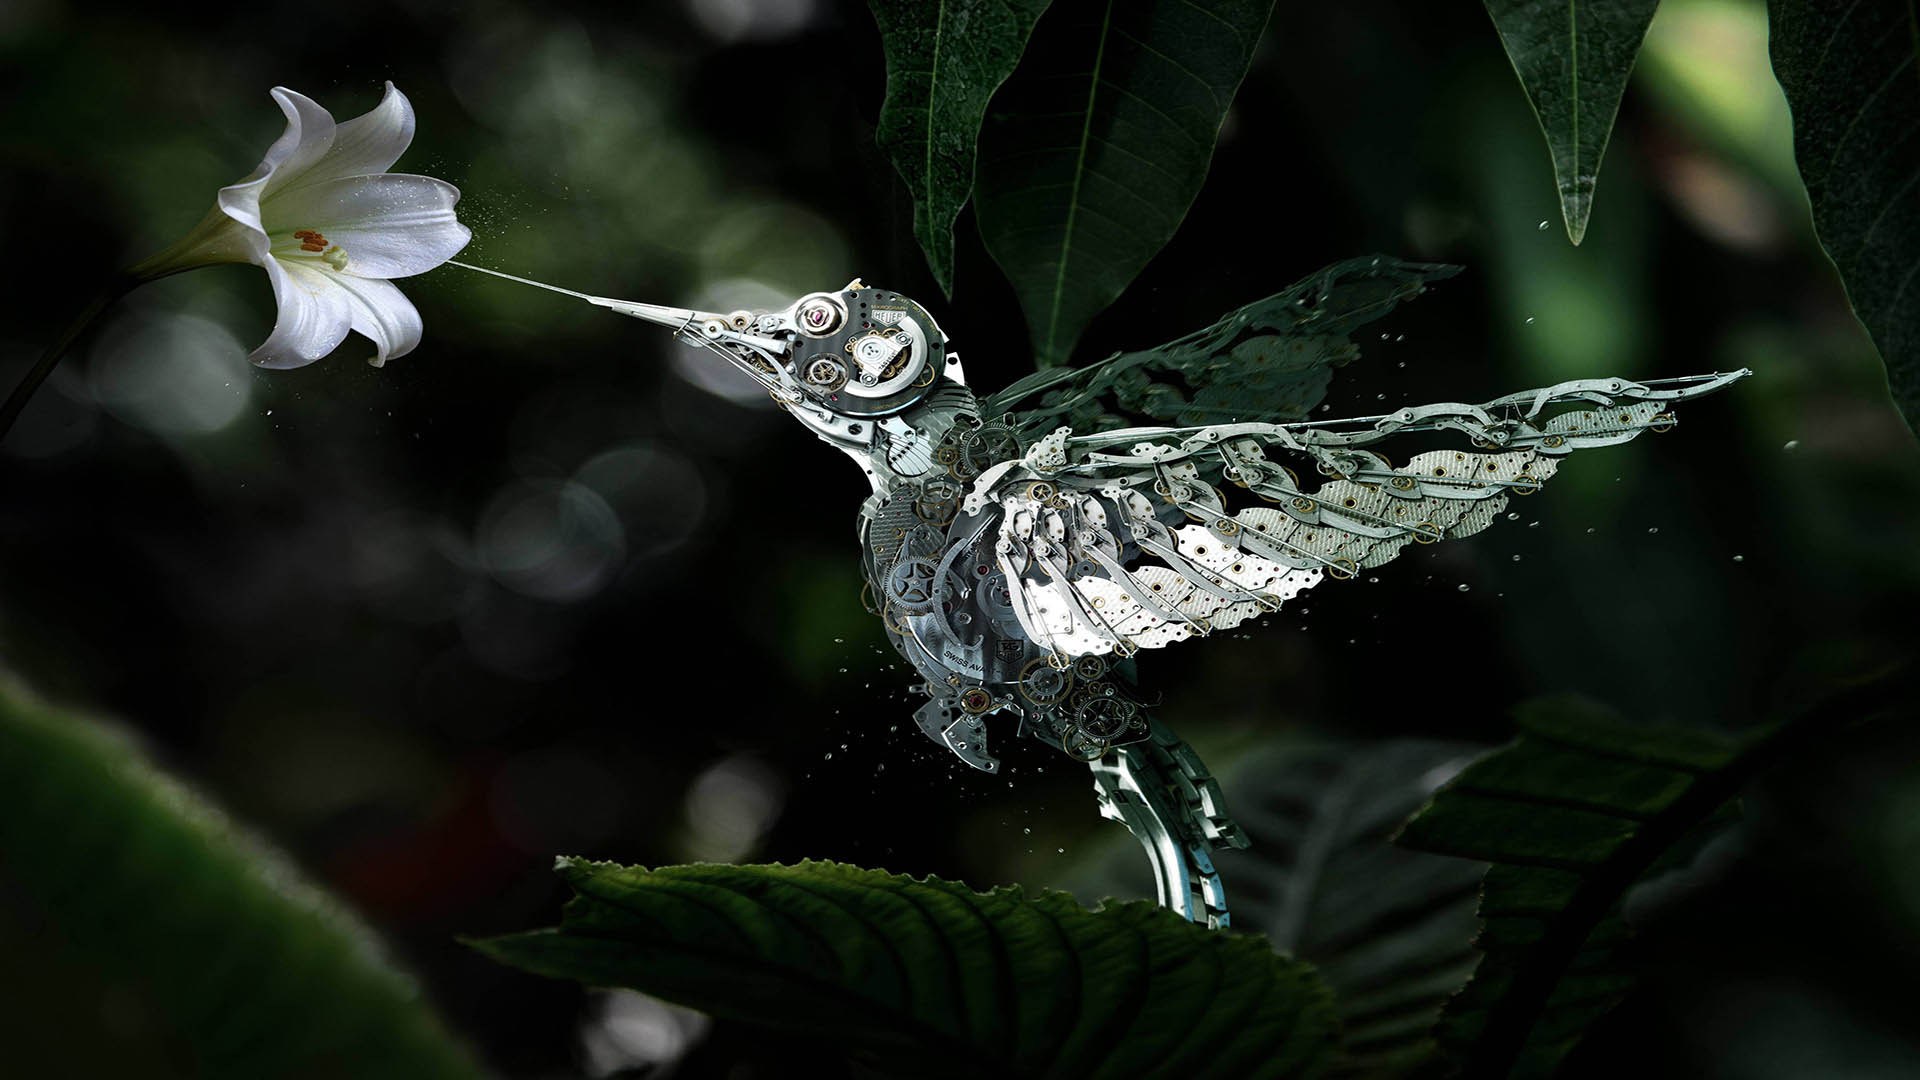 Mechanical Hummingbird , HD Wallpaper & Backgrounds